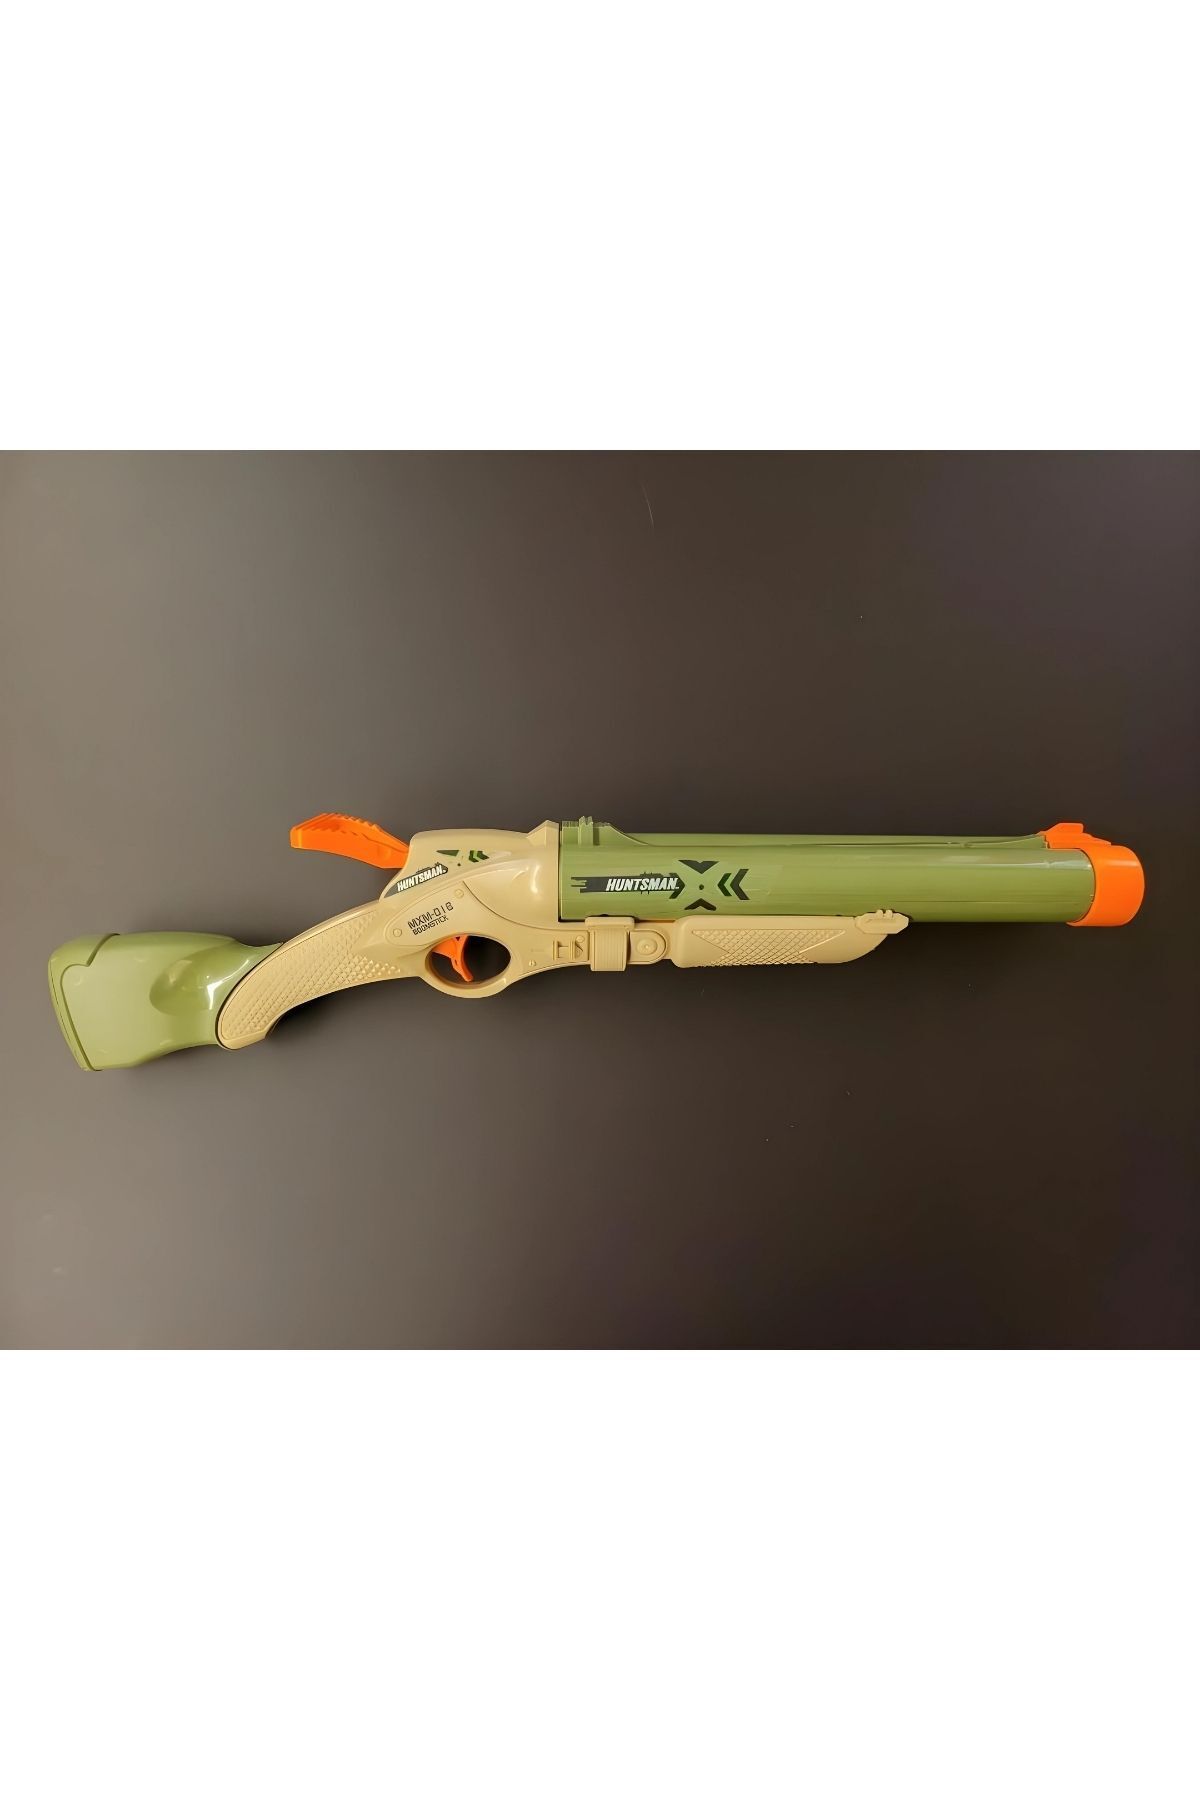 Apexma Huntsman Alpha Boomstick Pompalı Tüfek Sünger Mermili - Sünger Atan Oyuncak Tüfek